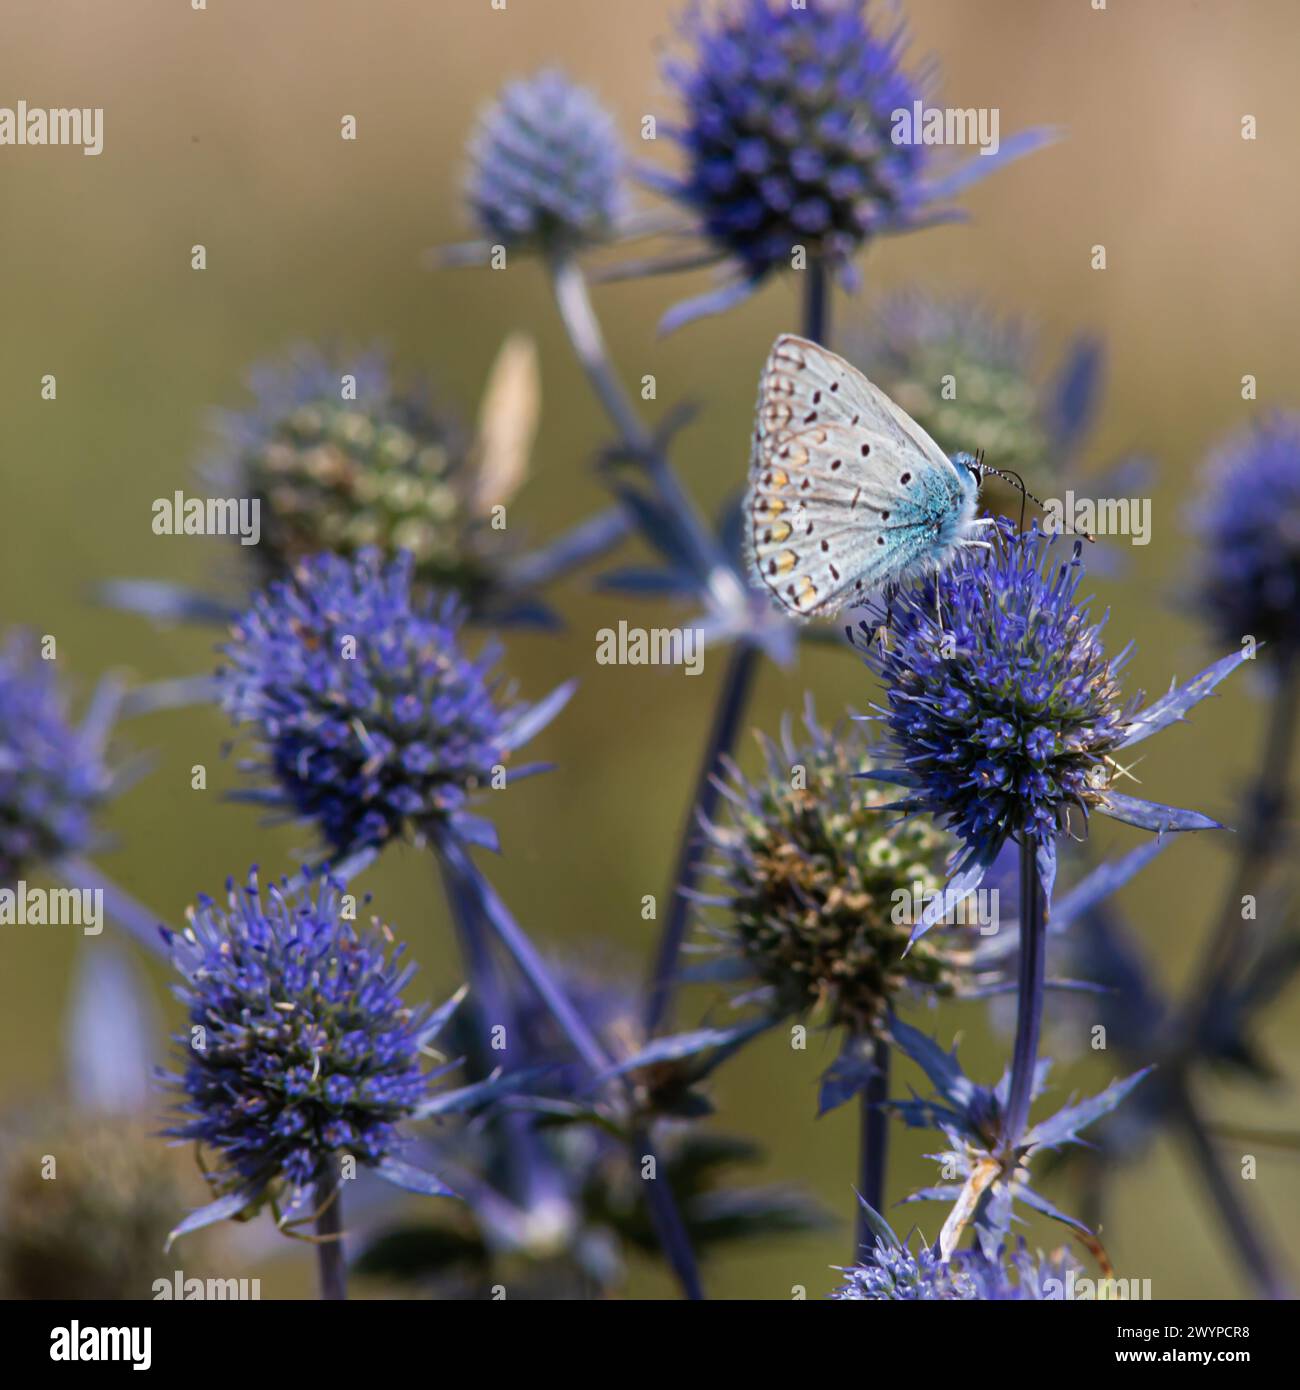 Fiore spiky. Fiori di cardo blu, Eryngium planum, eryngo blu. Cardi selvatiche viola fiorite. Farfalla blu su un fiore blu pungente. Foto Stock